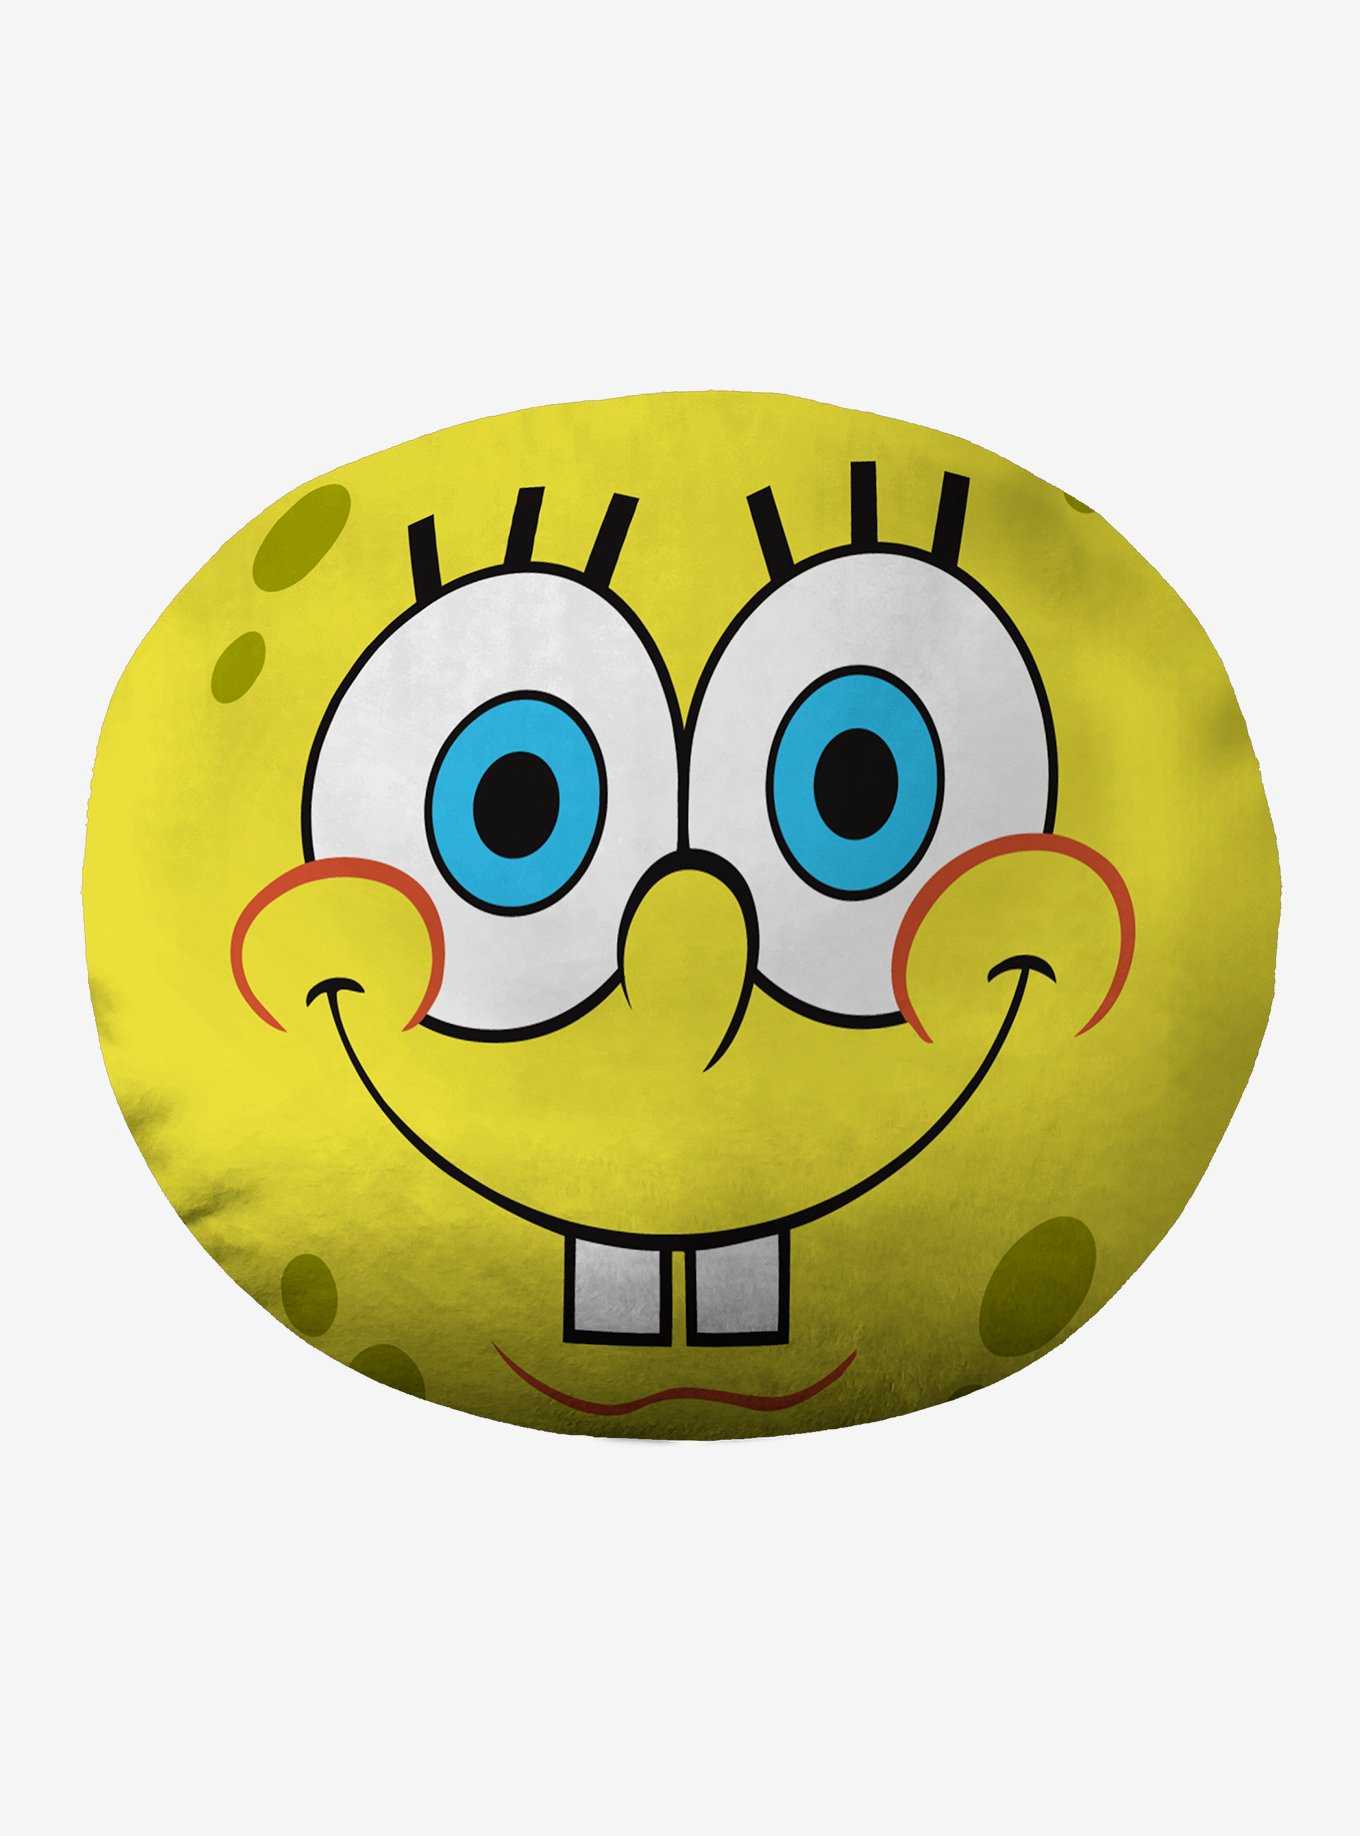 Spongebob Squarepants Spong Bob Cloud Pillow, , hi-res